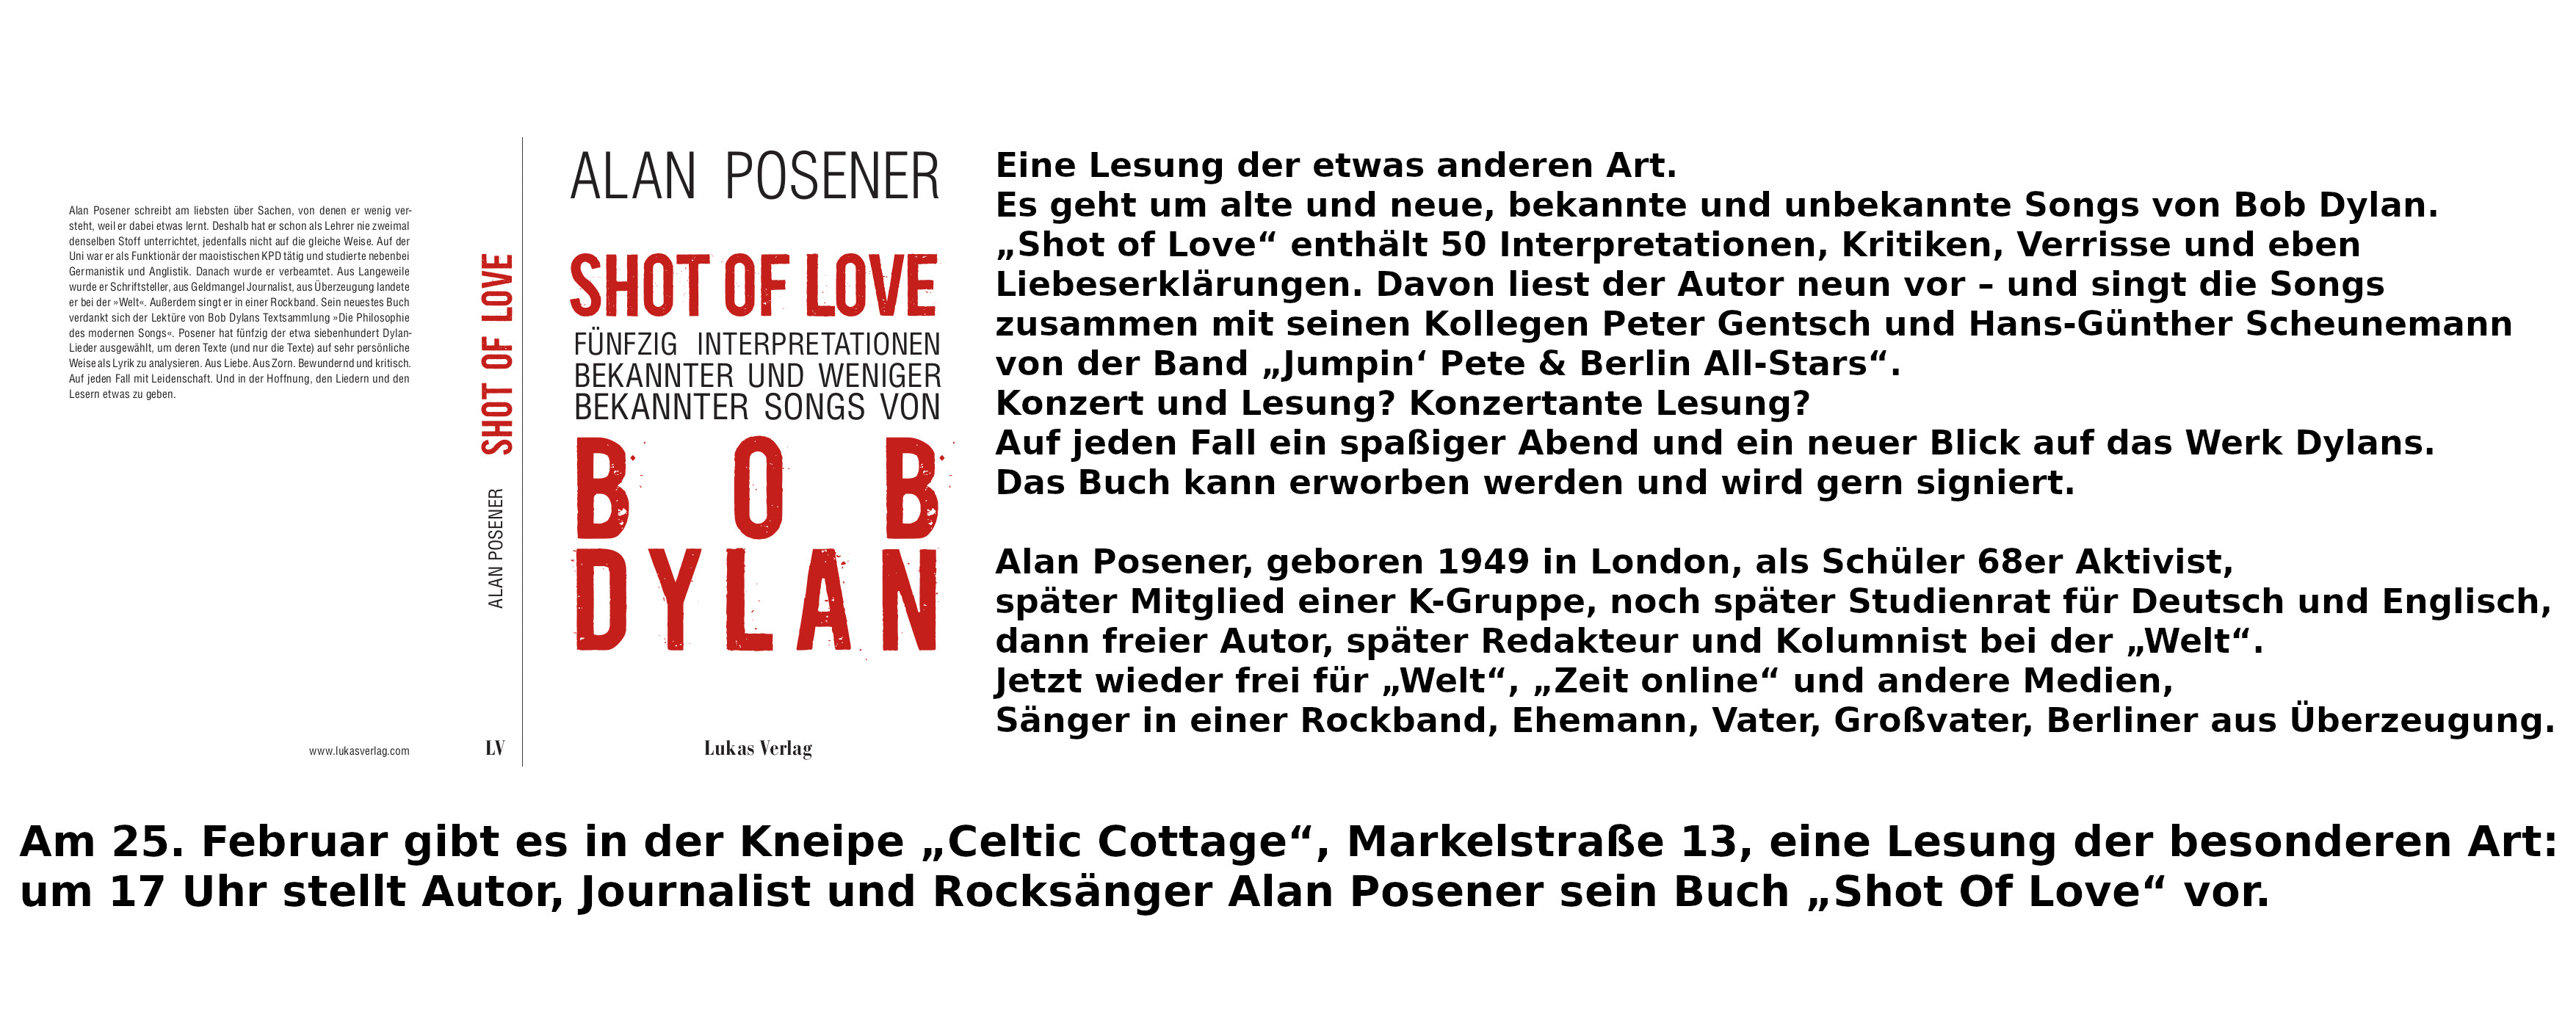 Der Flyer für eine Bob Dylan Lesung mit Musik.